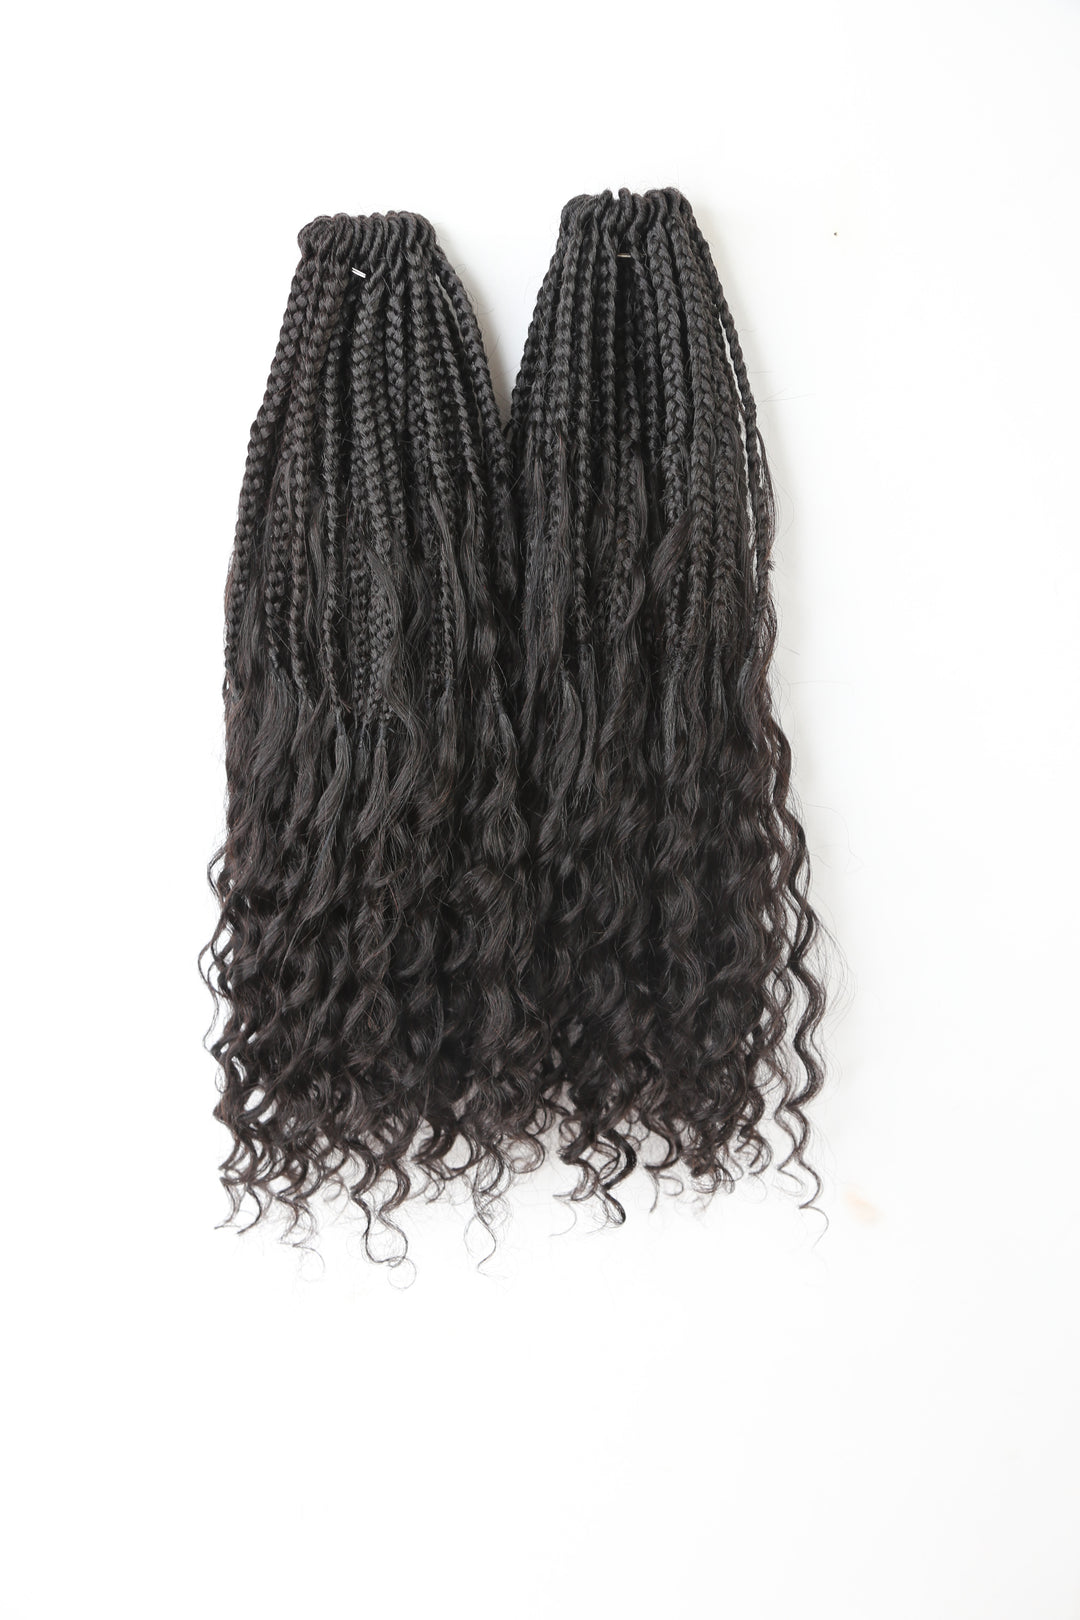 Pre-Looped Crochet Box Braids Human Hair Curls 14 Inch